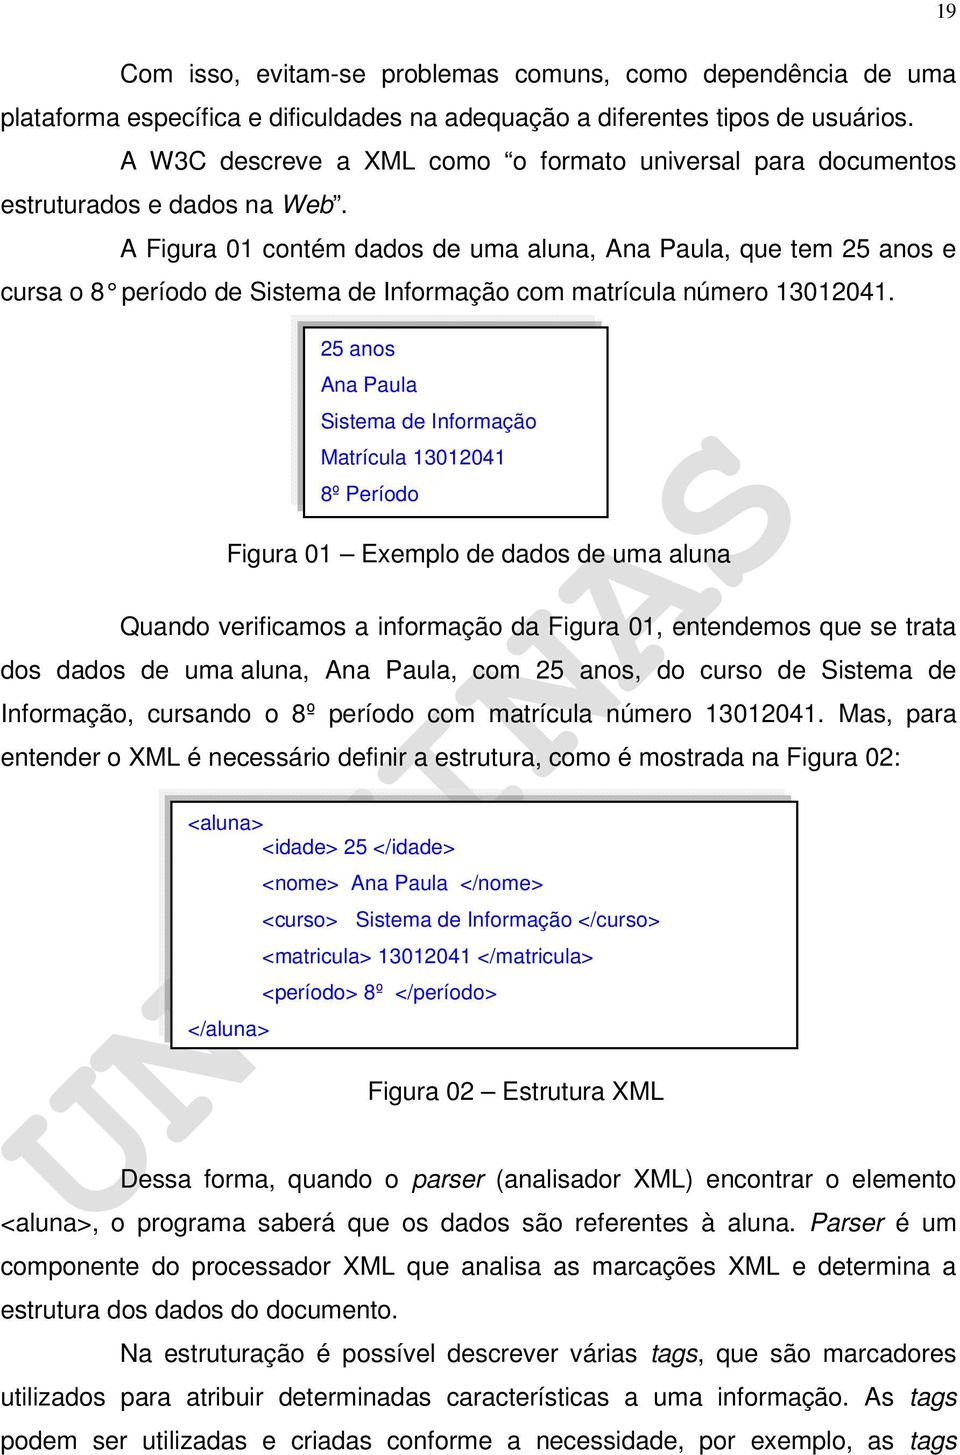 A Figura 01 contém dados de uma aluna, Ana Paula, que tem 25 anos e cursa o 8 período de Sistema de Informação com matrícula número 13012041.